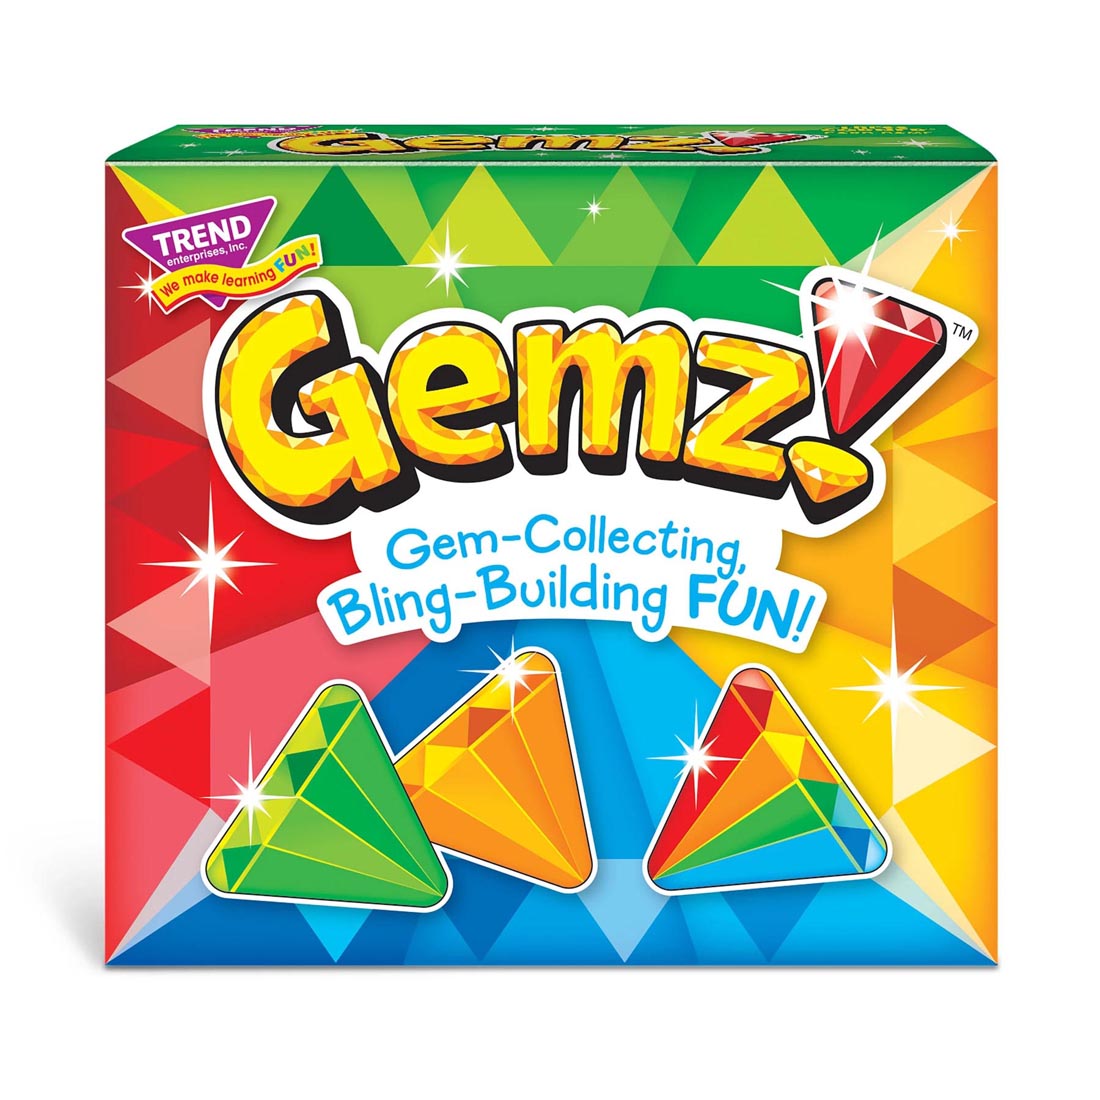 TREND Gemz! Three Corner Card Game